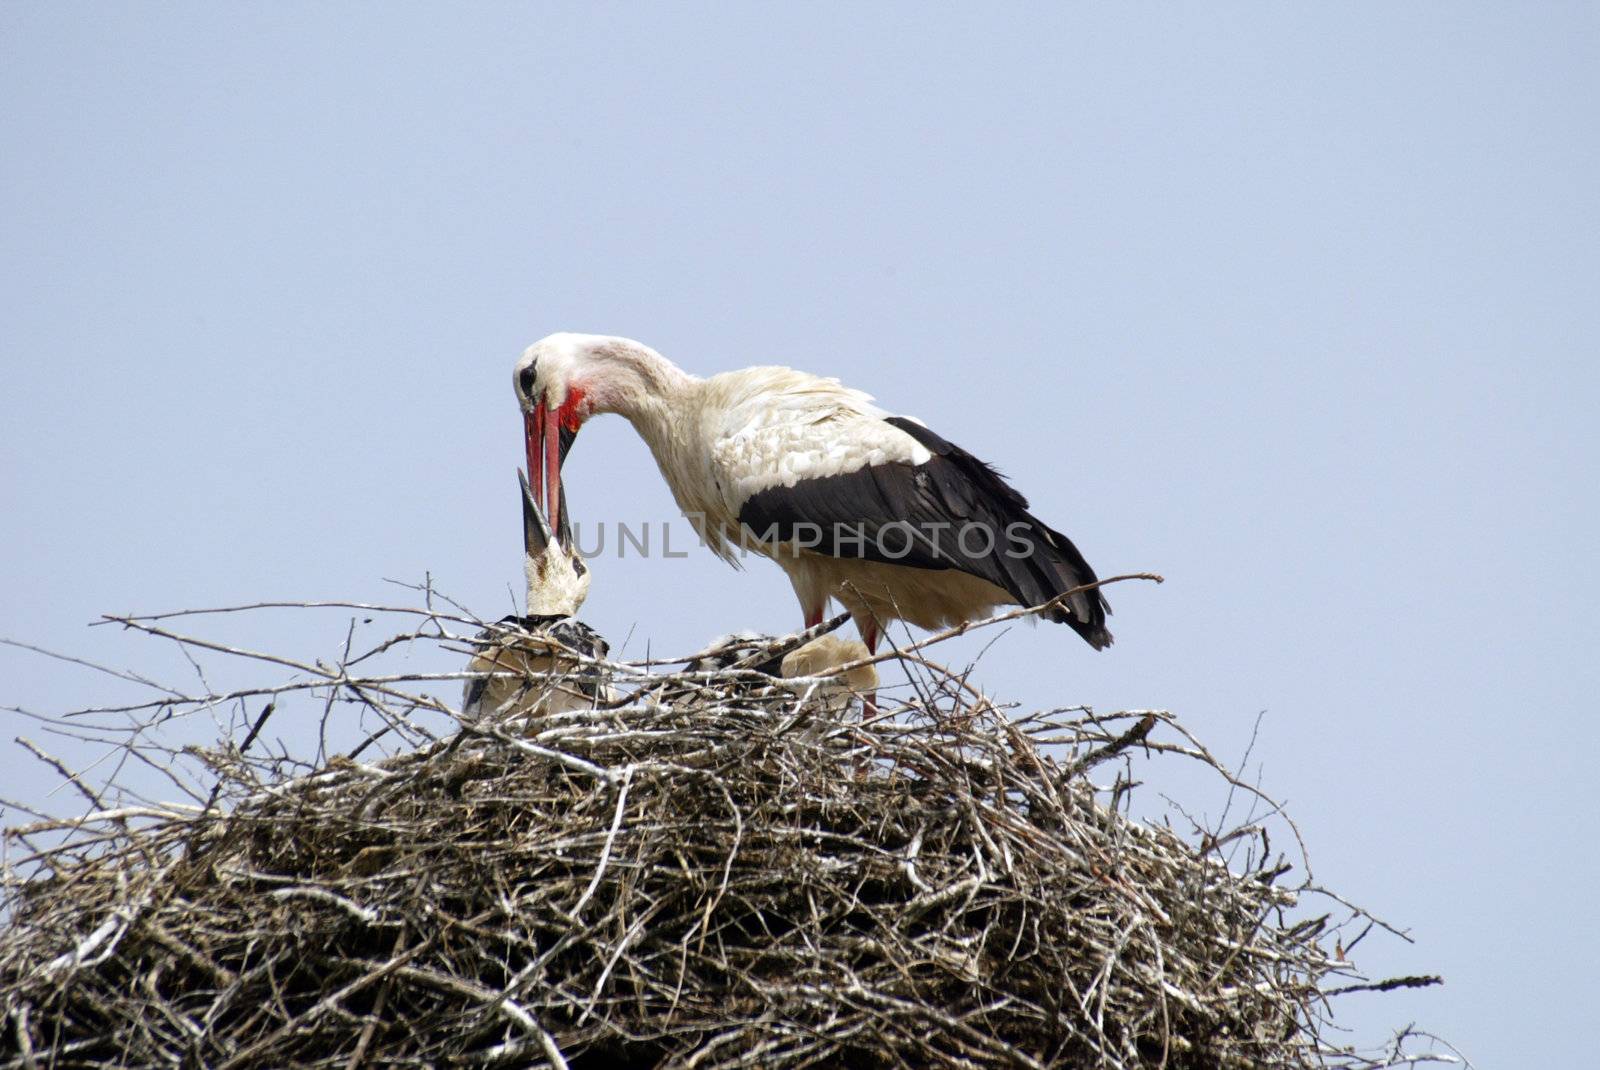 Stork family on the nest